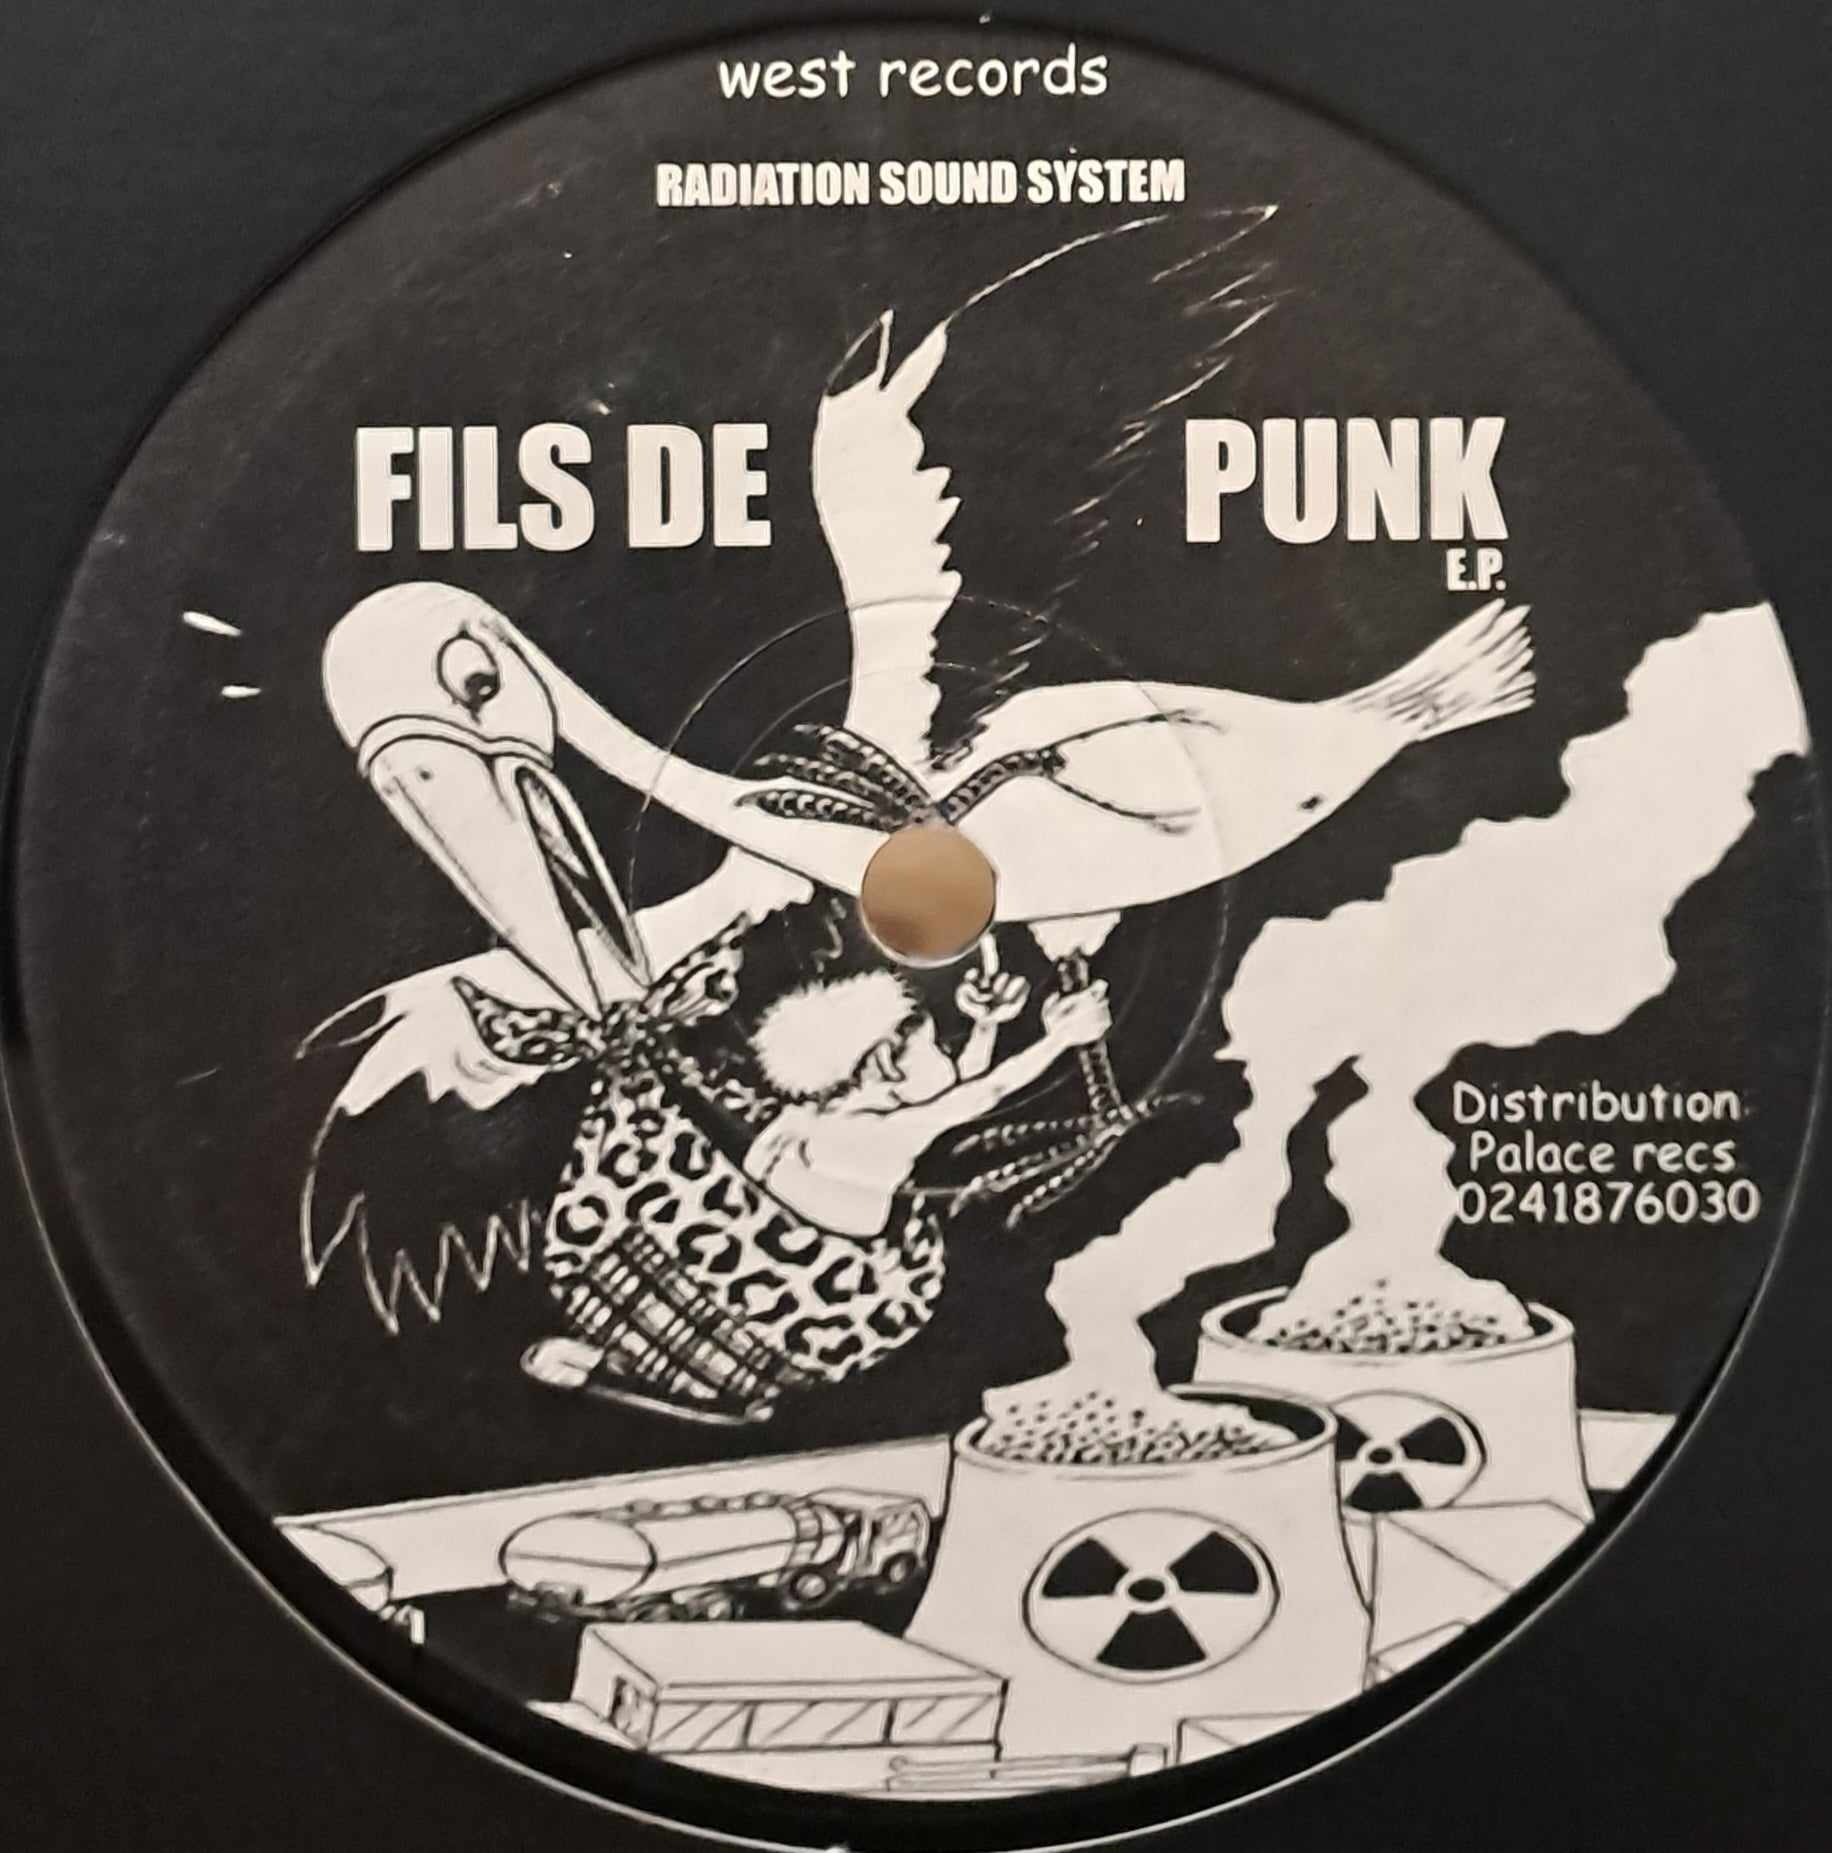 West Records 003 - vinyle Punk